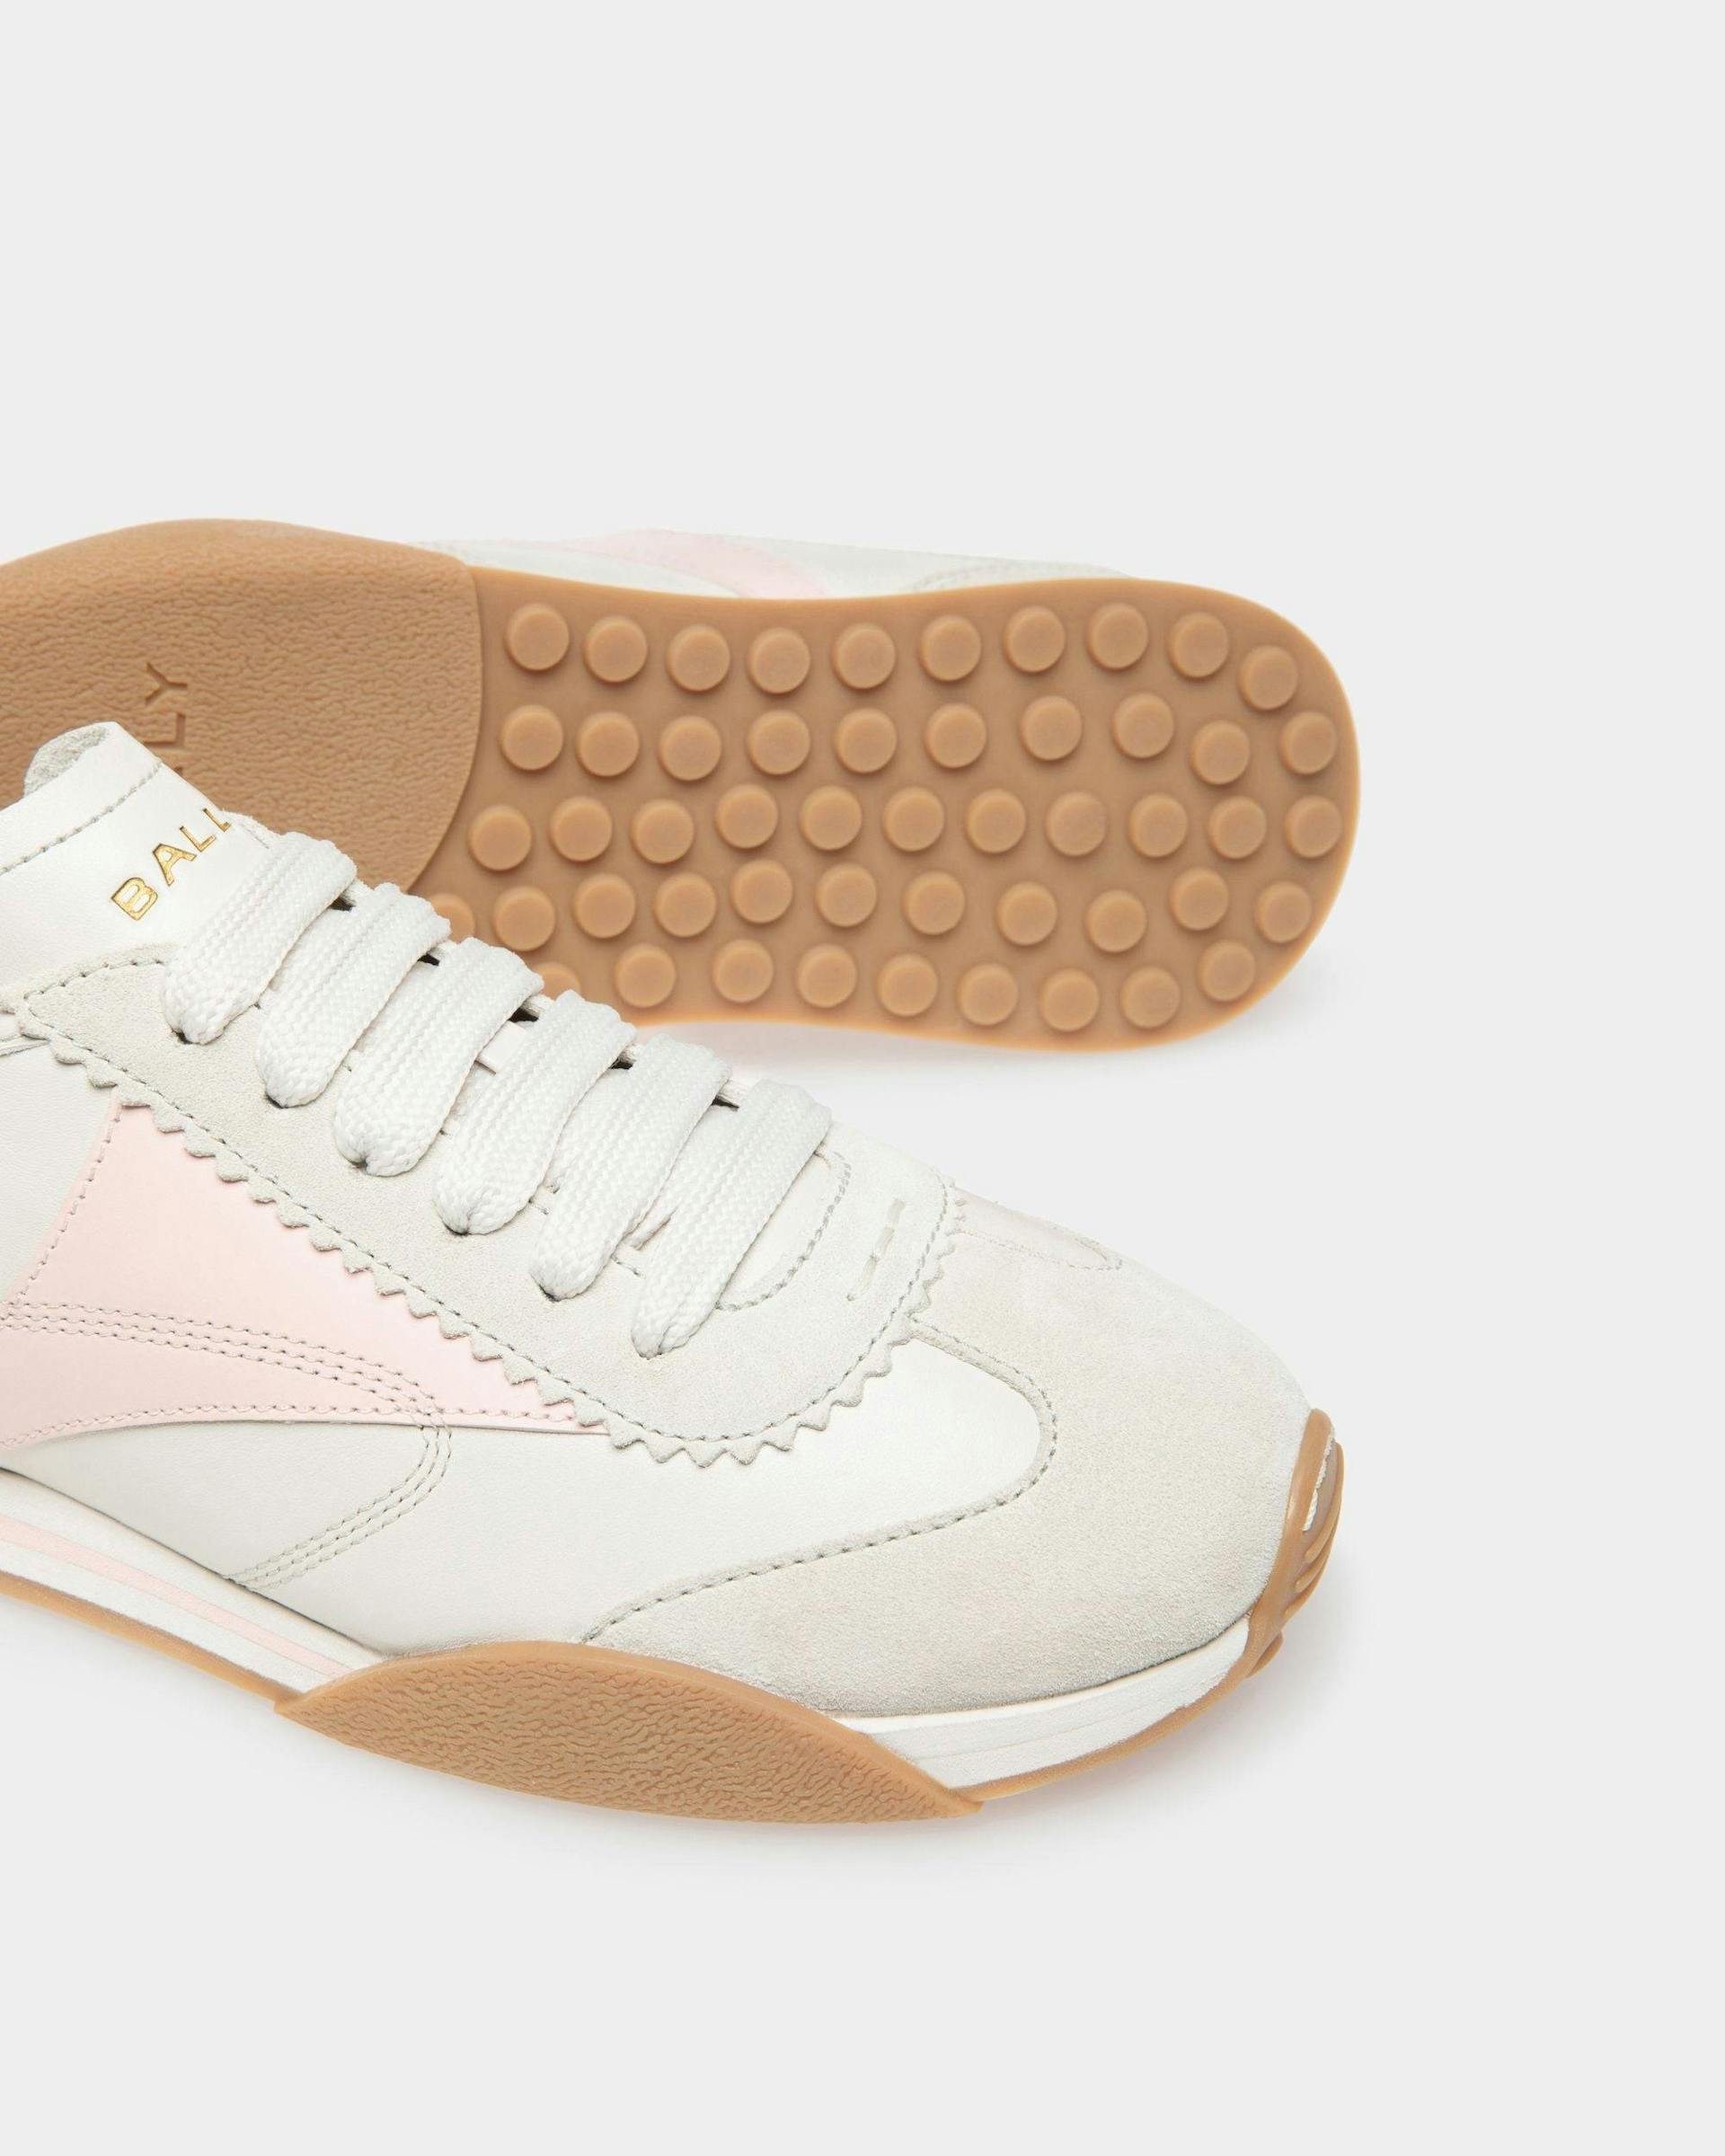 Sussex Sneaker Aus Leder in Staubweiß und Rosé - Damen - Bally - 04